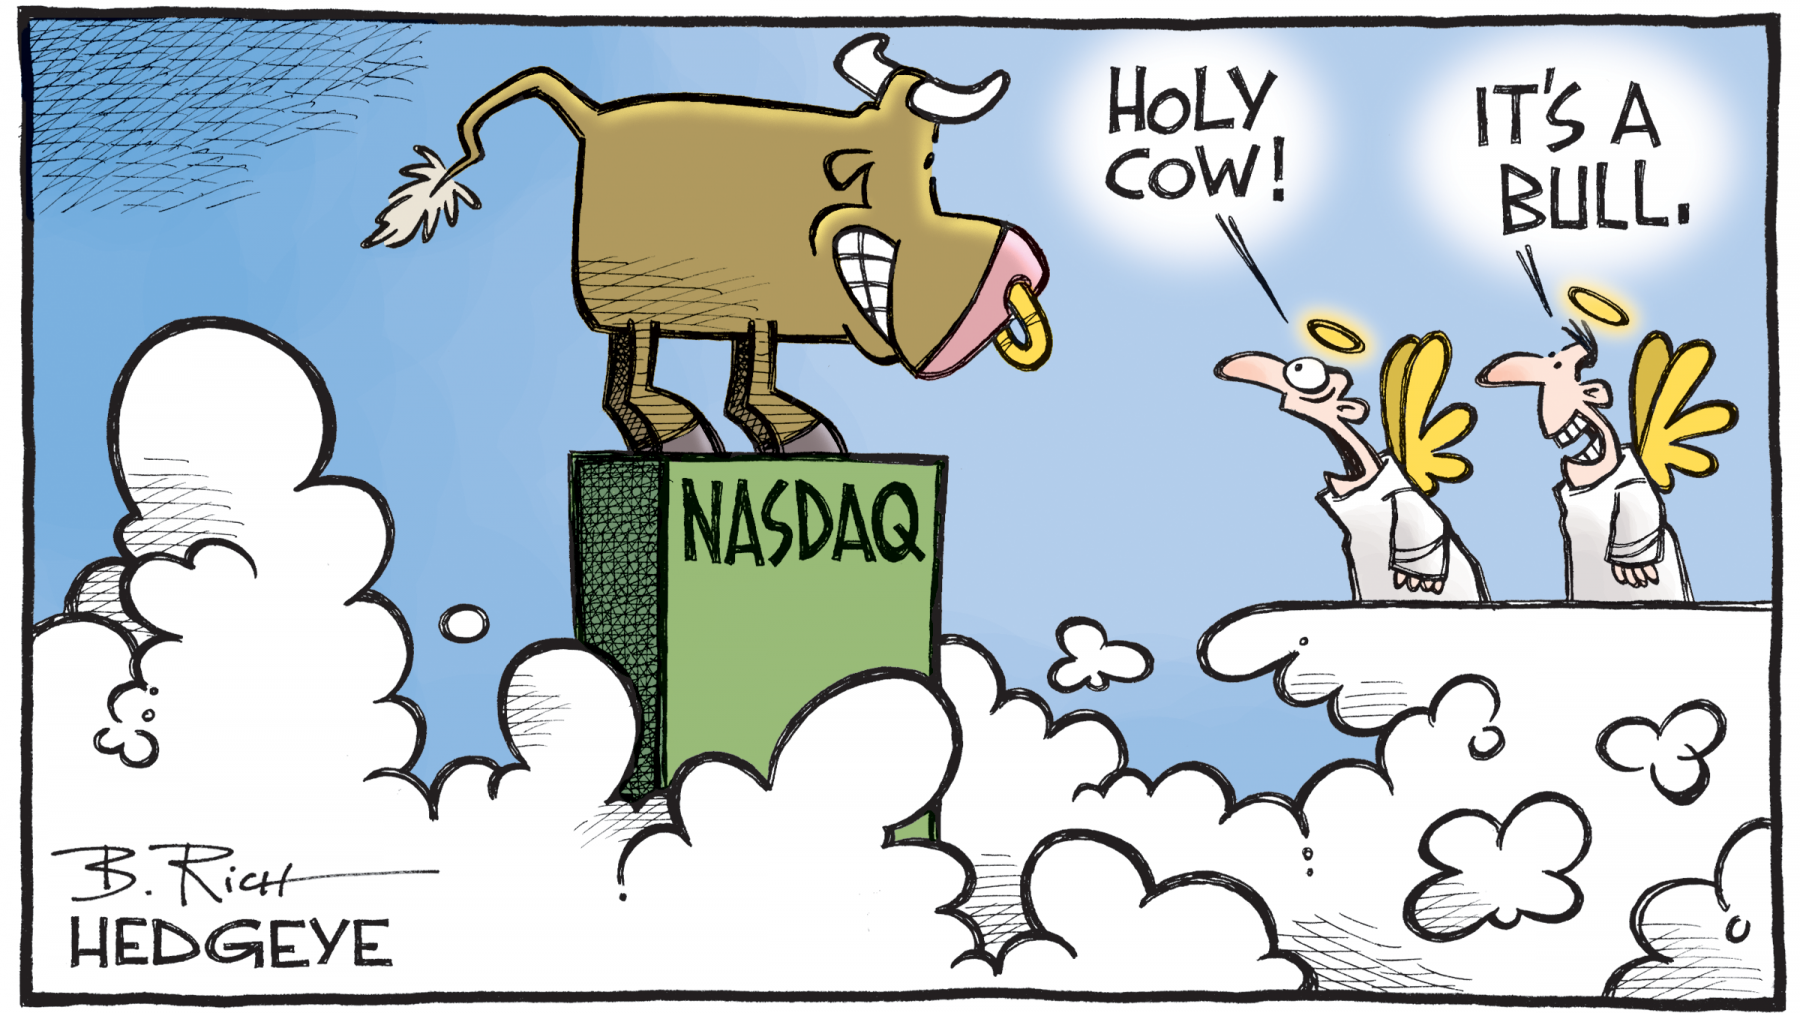 07.21.2017_NASDAQ_holy_cow.png